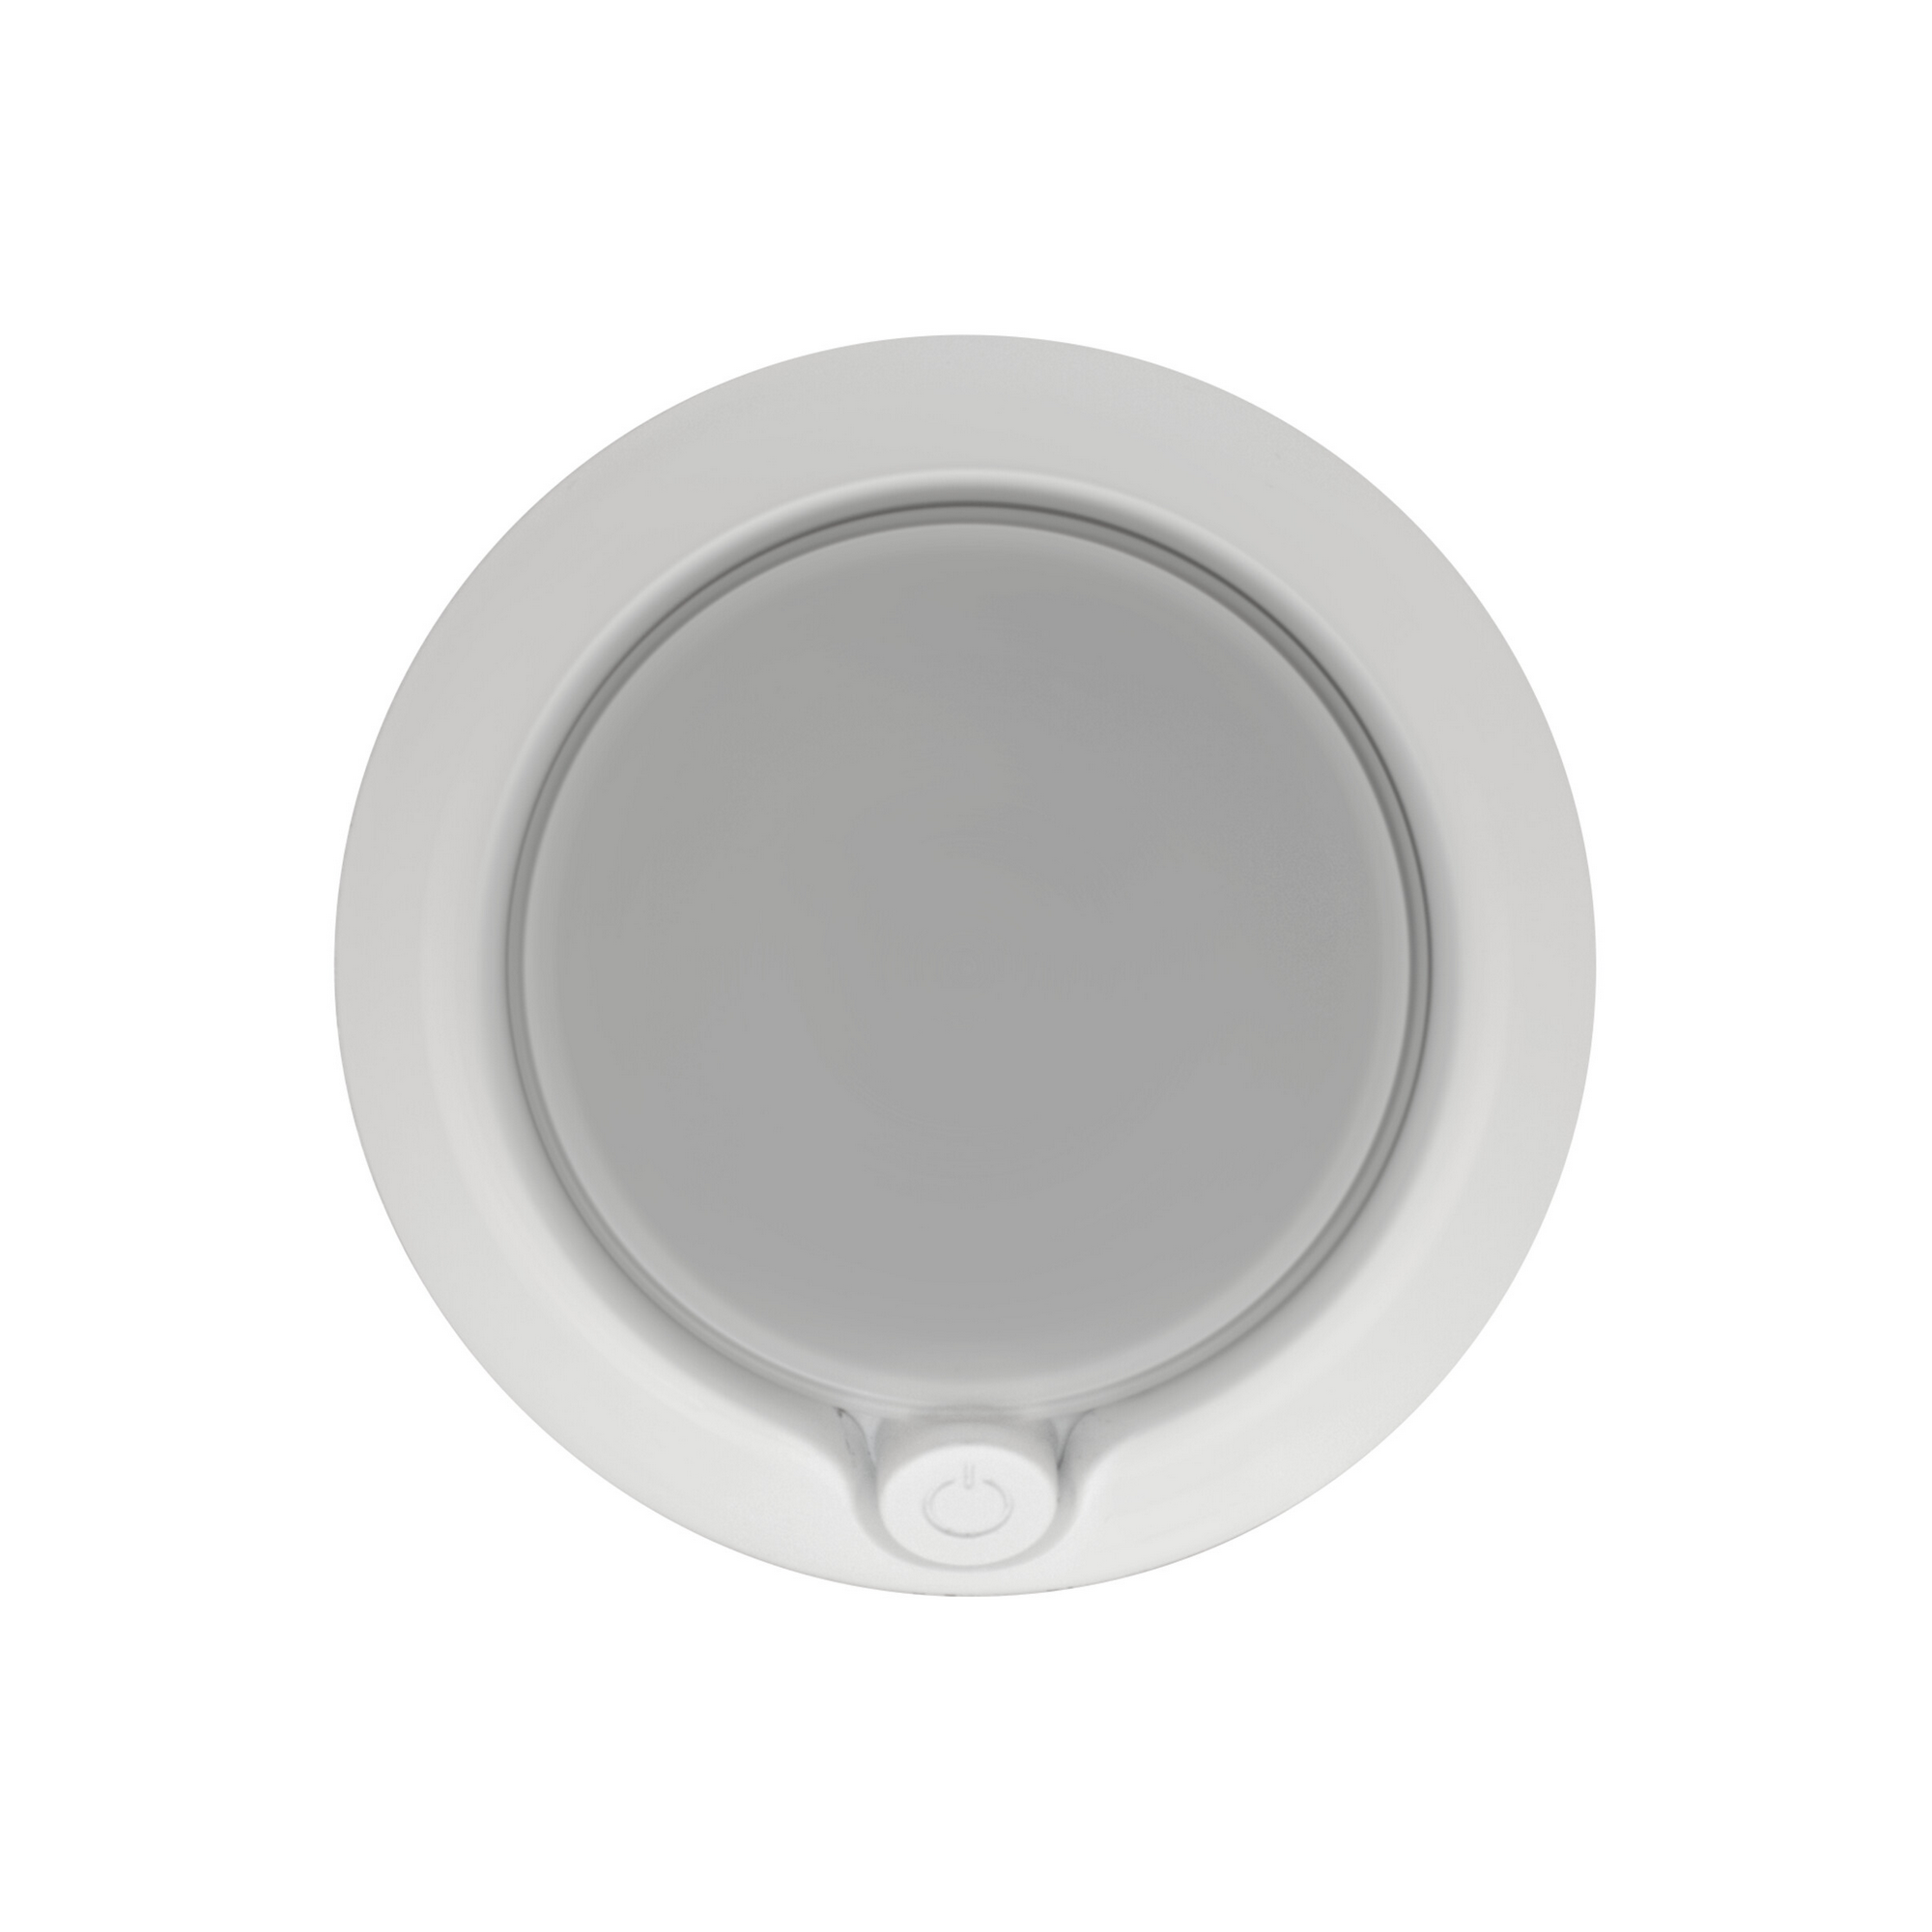 LED-Nachtlicht 'Lunetta Round' weiß Ø 71 mm + product picture